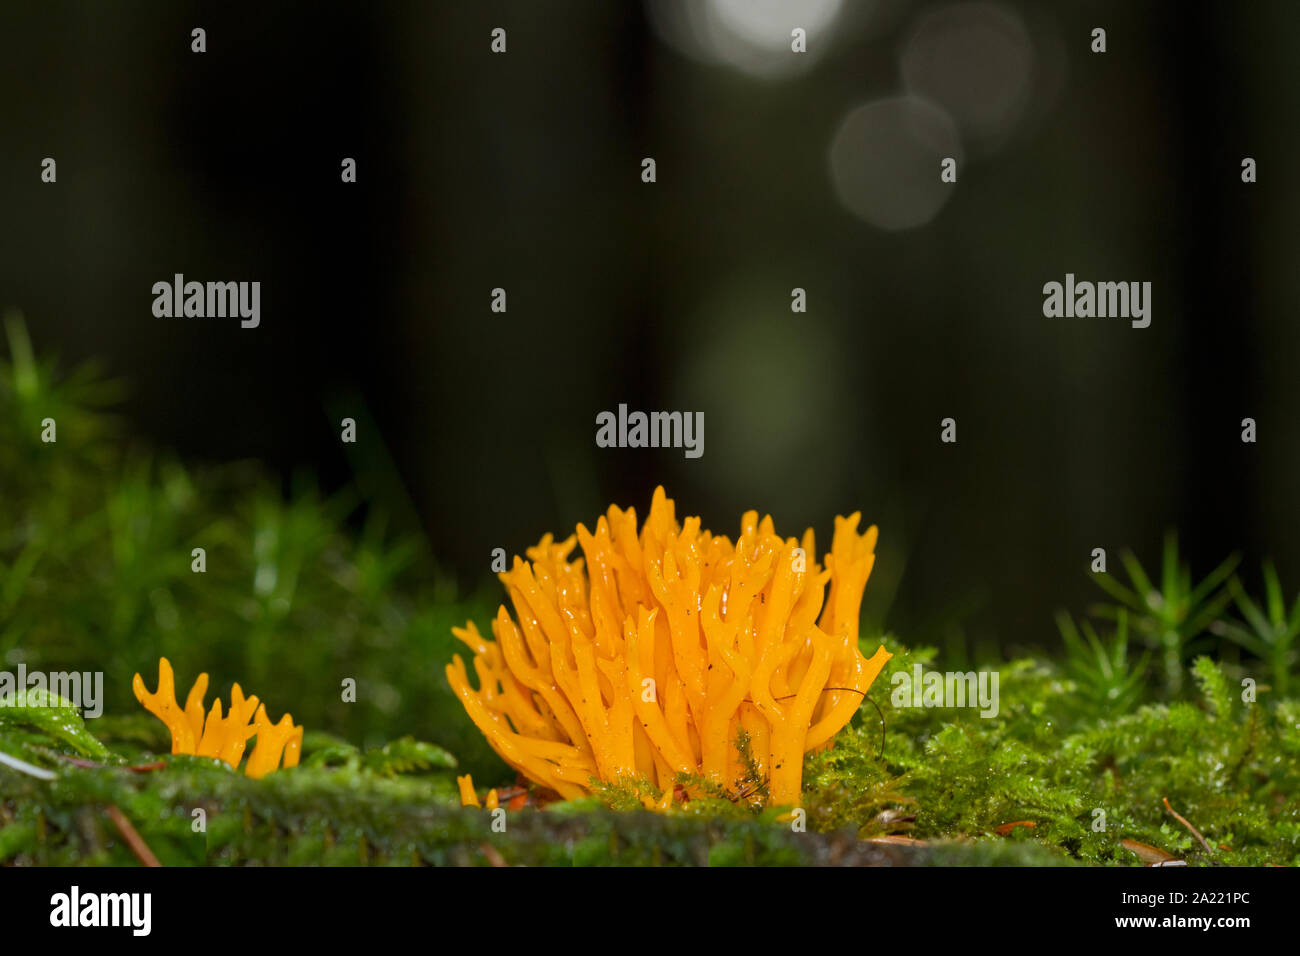 De color amarillo brillante de cuerno de ciervo, un hongo hongo Coral, creciendo en MOSS en el tronco de un árbol en un bosque oscuro Foto de stock